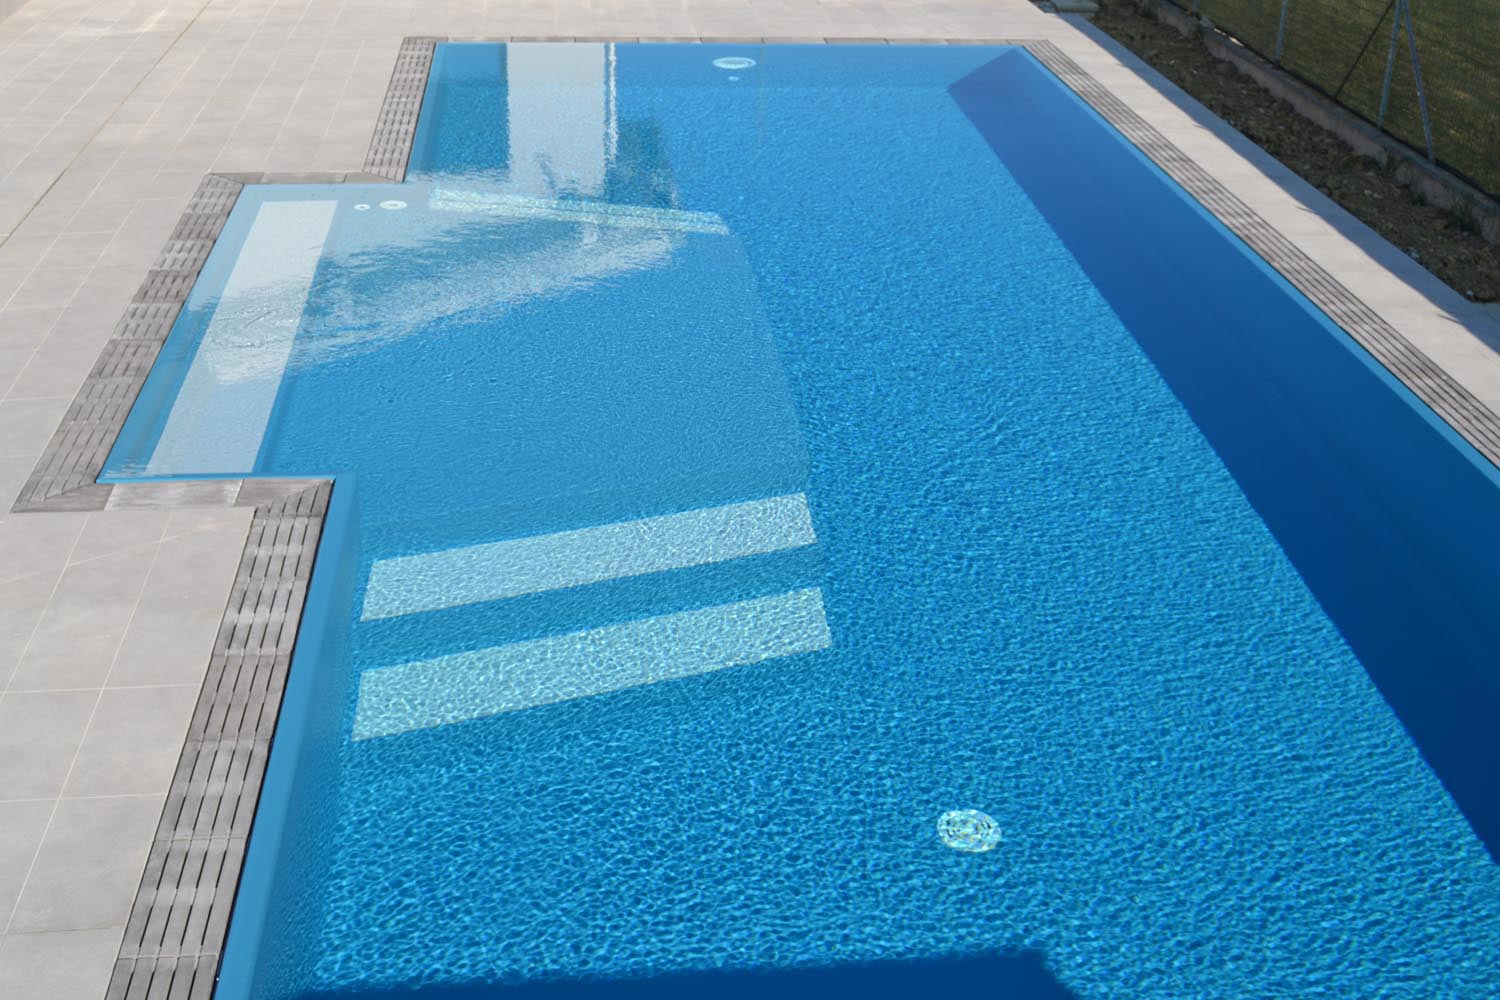 Dettaglio bagnasciuga interno con scalini esterni bianchi. La forma permette di rilassarsi con sdraio o lettino e scendere in piscina in tutta sicurezza grazie al rivestimento antiscivolo.